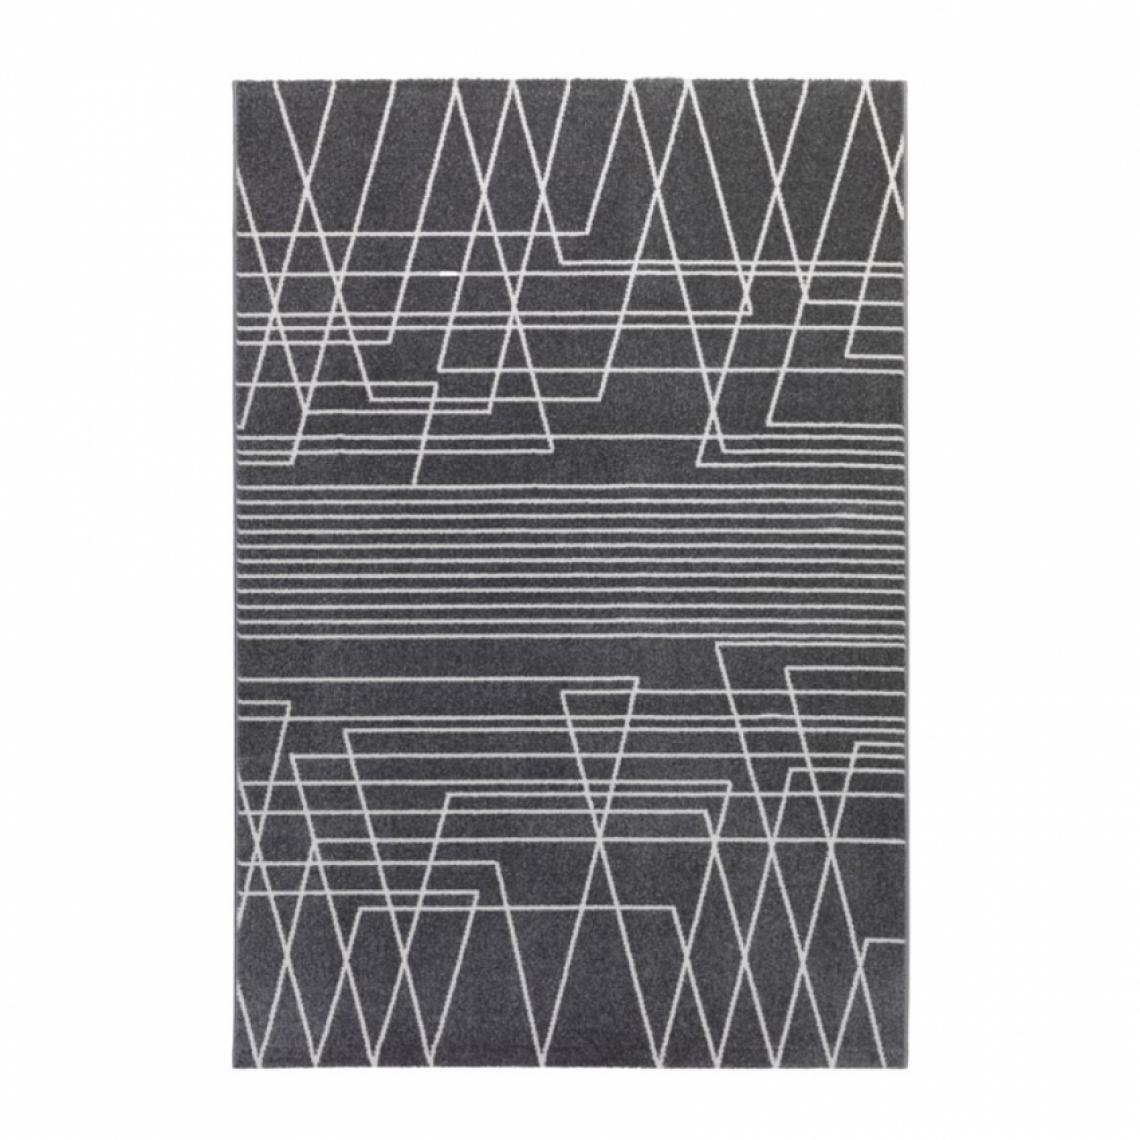 Wmd - Tapis gris noir rectangulaire design géométrique moderne Milano GRI016, Taille: 80 x 150 - Tapis